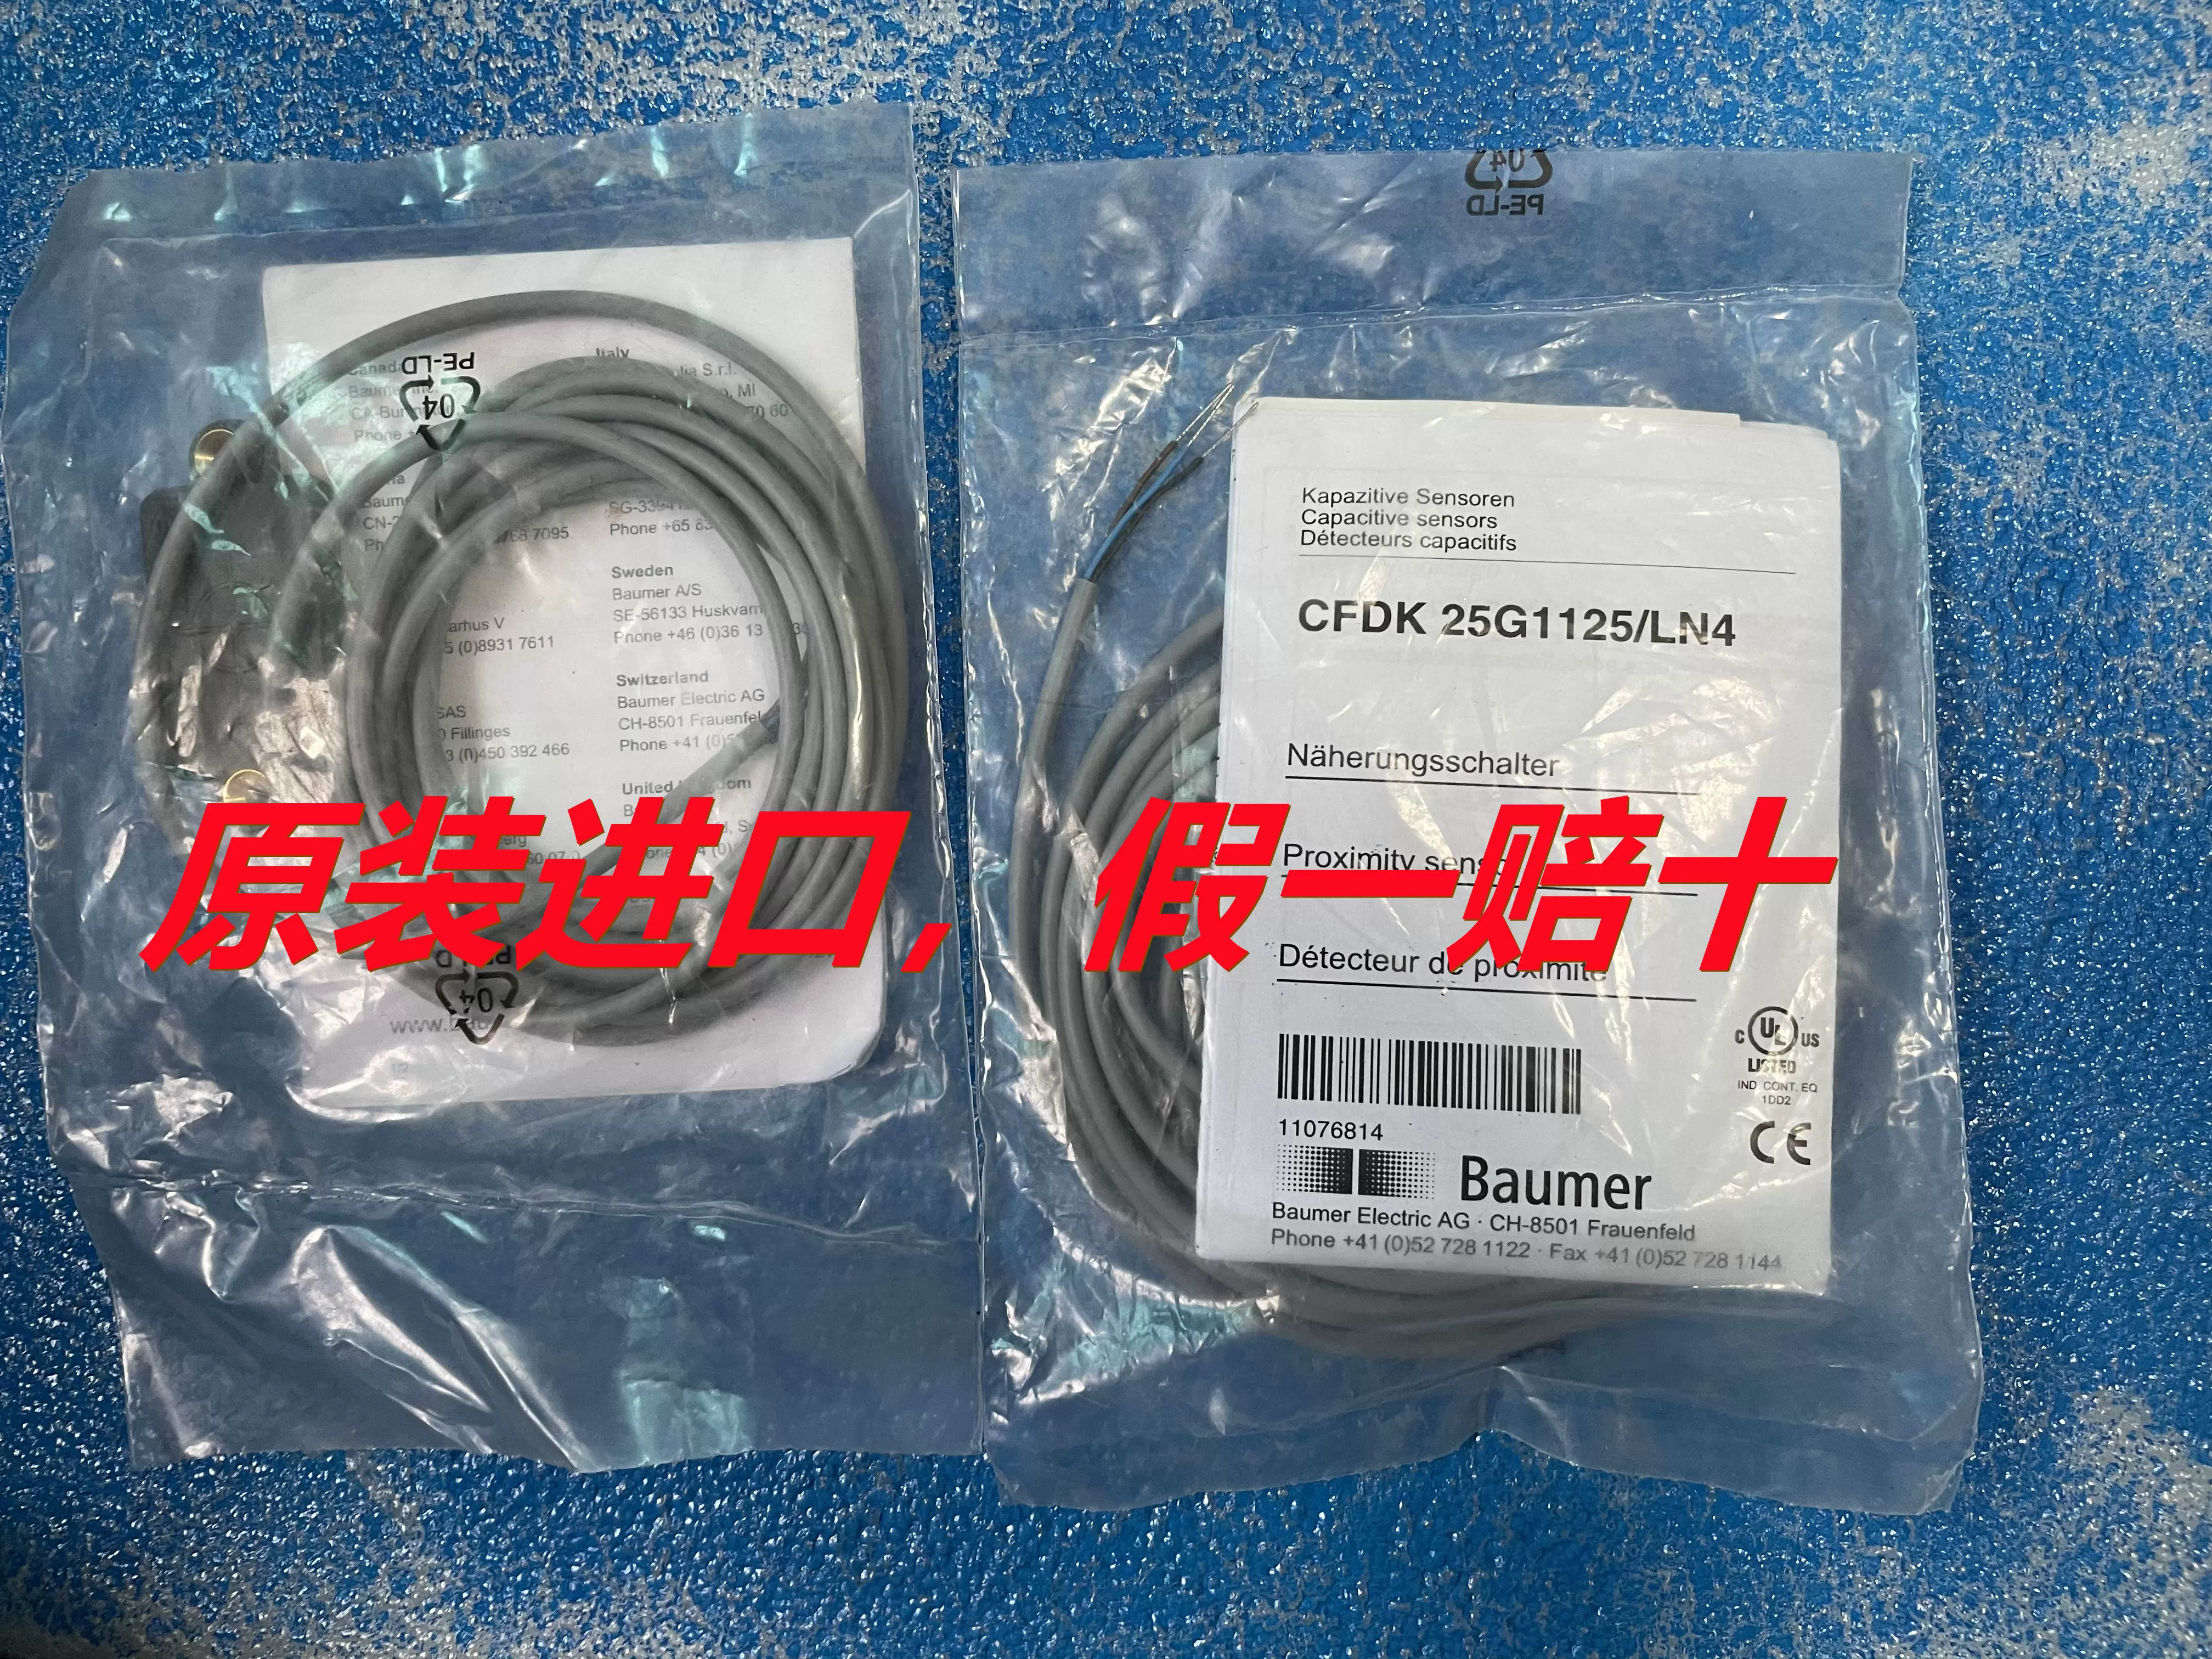 全新堡盟Baumer传感器CFDK 25G1125/LN4 现货现发-Taobao